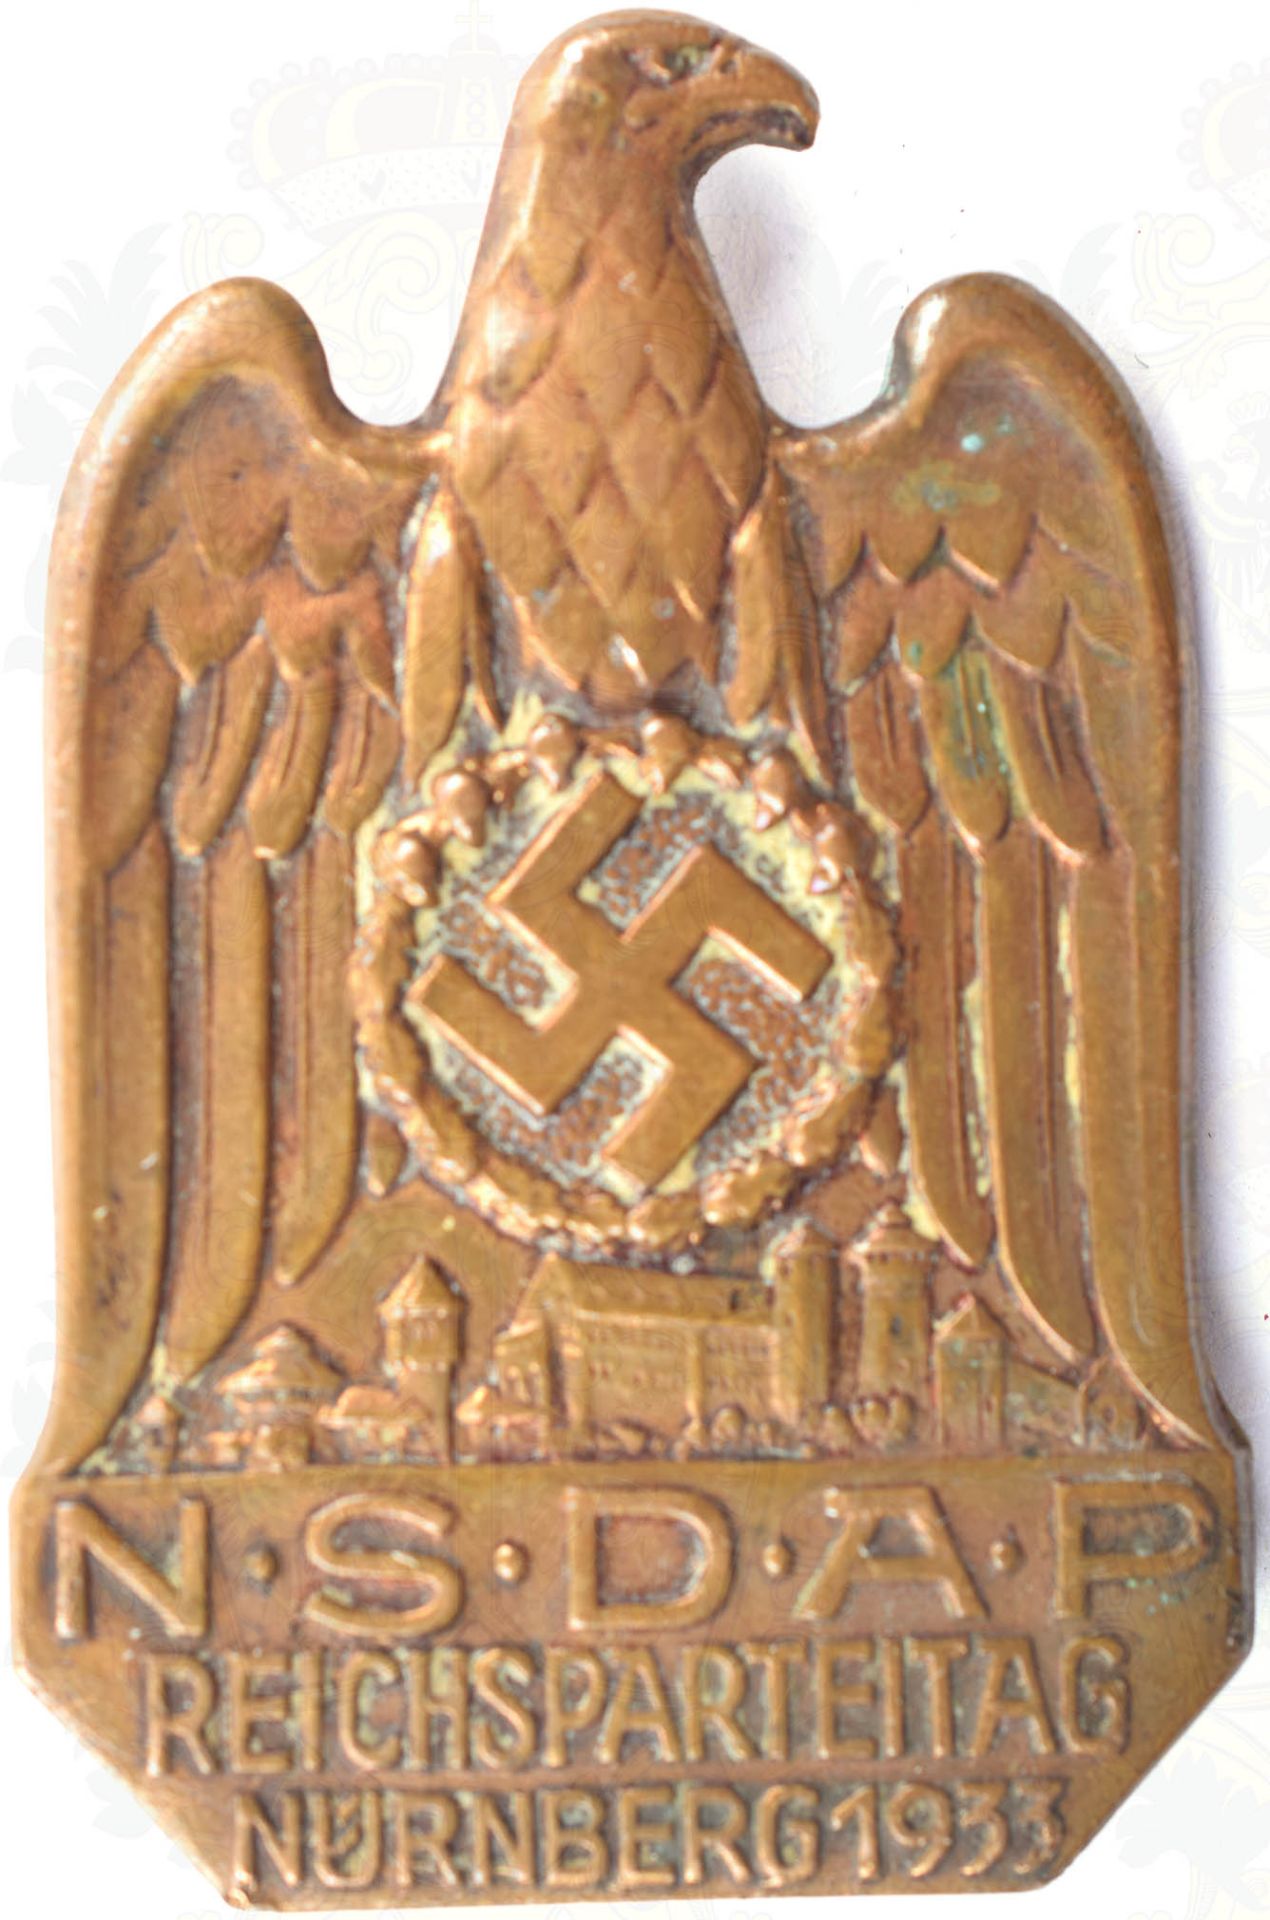 ABZEICHEN REICHSPARTEITAG NÜRNBERG 1933, Bronze, massiv, entspr. bez., zeitgen. Nadel rs. neu